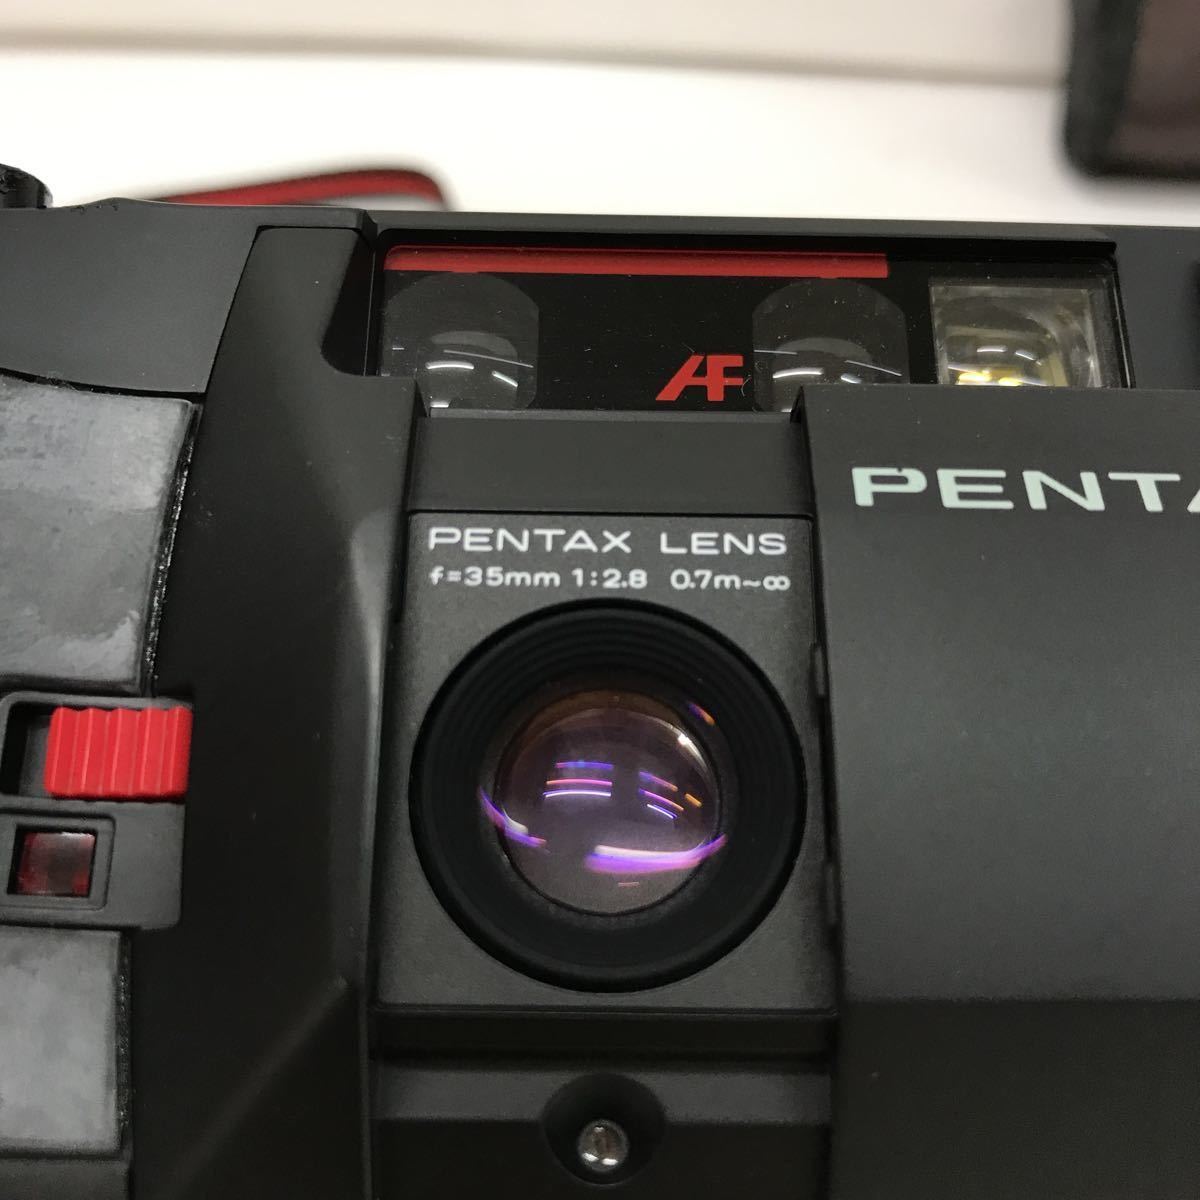 142 ジャンク品 電池液漏れあり ペンタックス PENTAX コンパクトカメラ PC35 AF-M SE DATE カメラ ケース付き  劣化あり(コンパクトカメラ)｜売買されたオークション情報、yahooの商品情報をアーカイブ公開 - オークファン（aucfan.com）